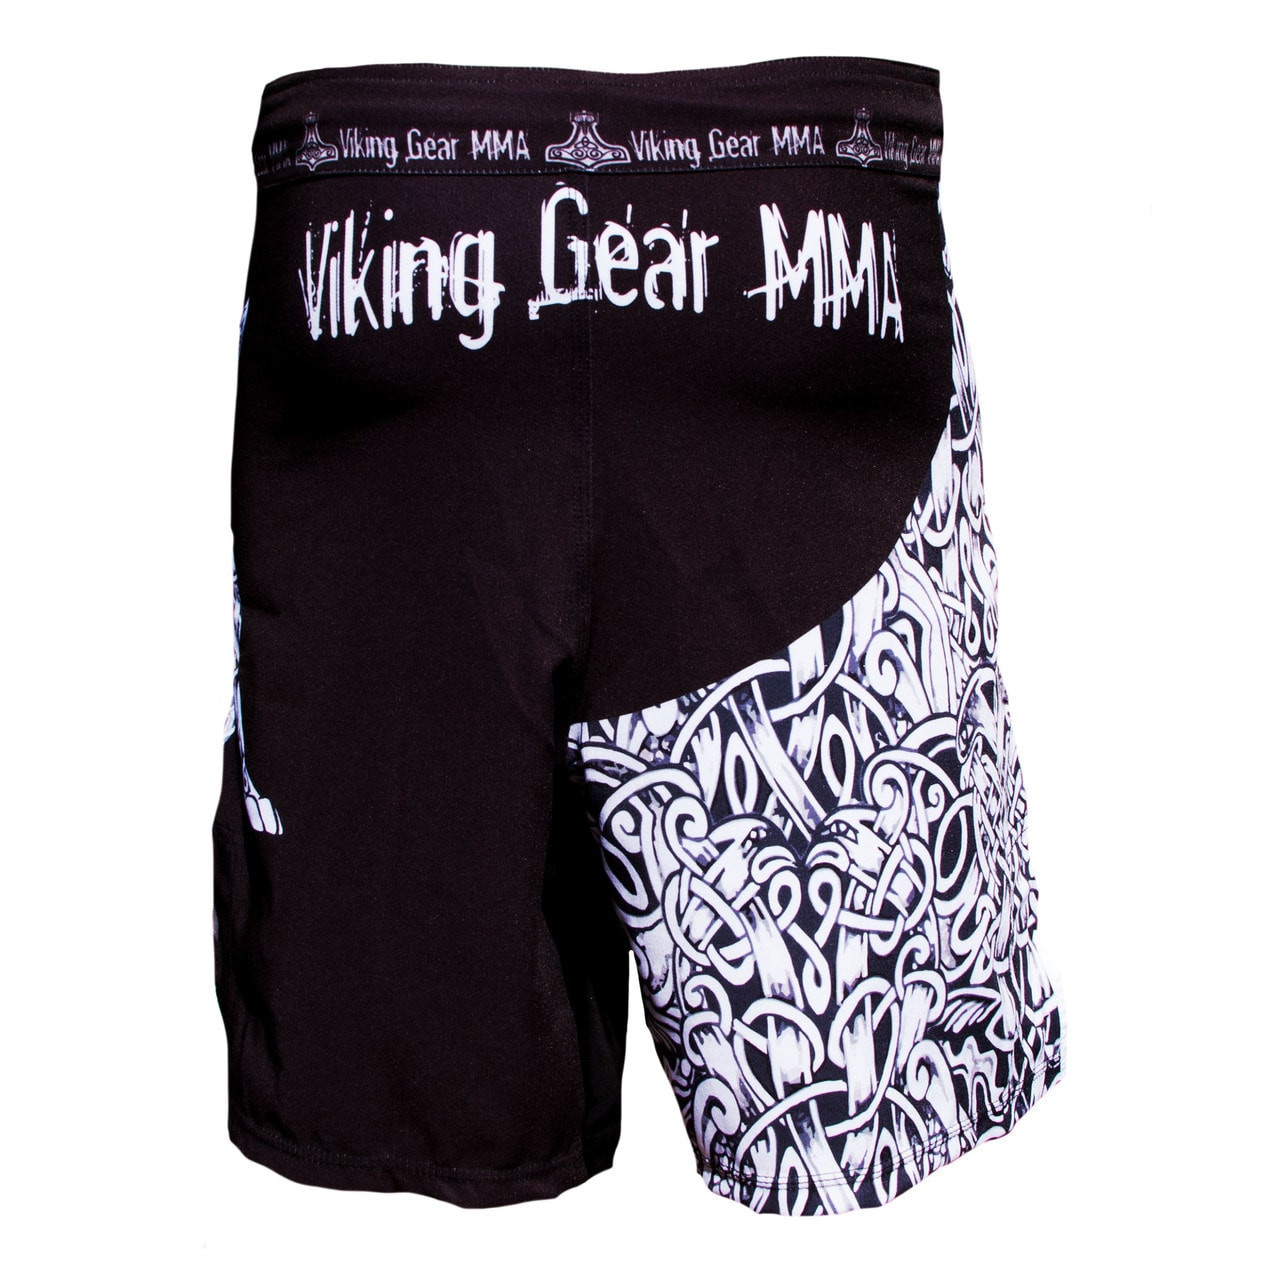 Fenrir Fight Shorts - Viking Gear MMA